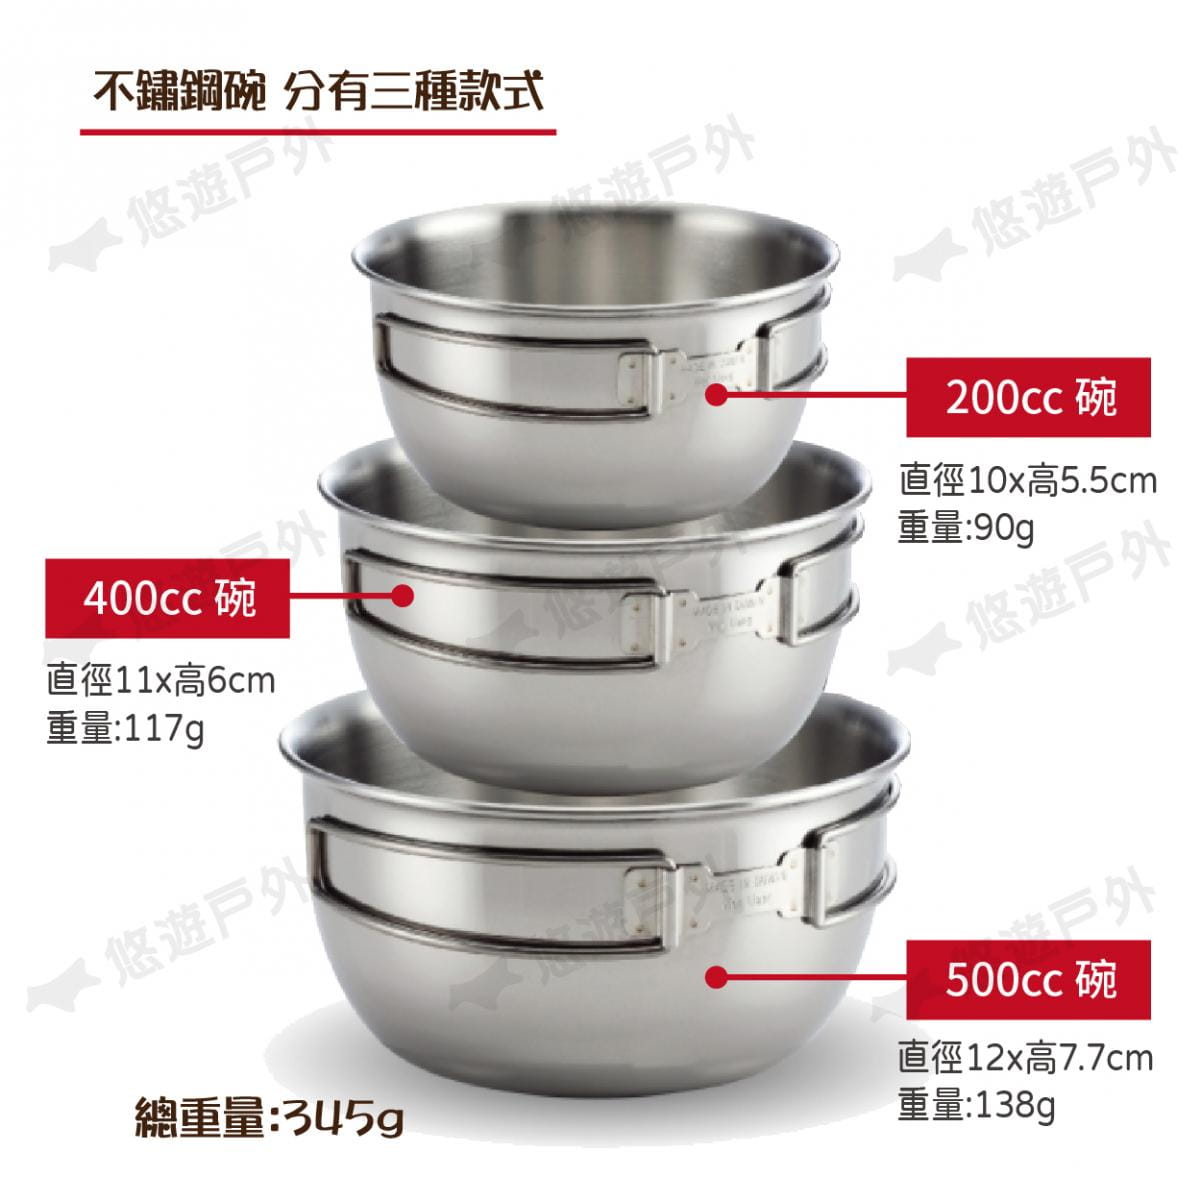 【文樑】ST-2020-2 304不鏽鋼碗 三件式 附收納袋 套碗 湯碗 餐具 碗 分菜盤 廚房 4